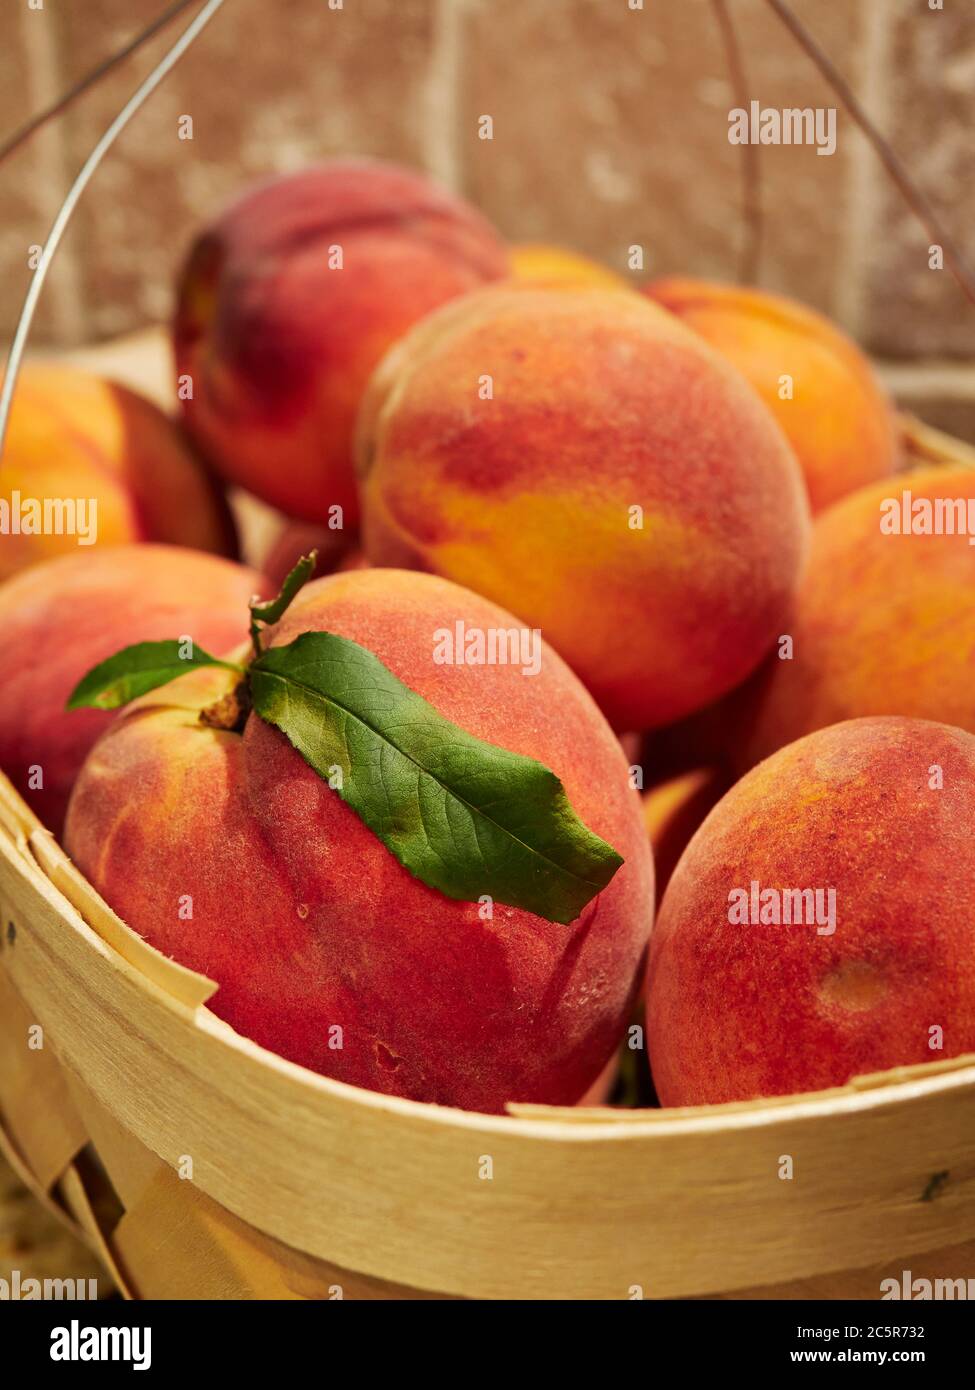 Pesche fresche e mature senza aggrappamento una frutta estiva in un cestino su un banco da cucina. Foto Stock